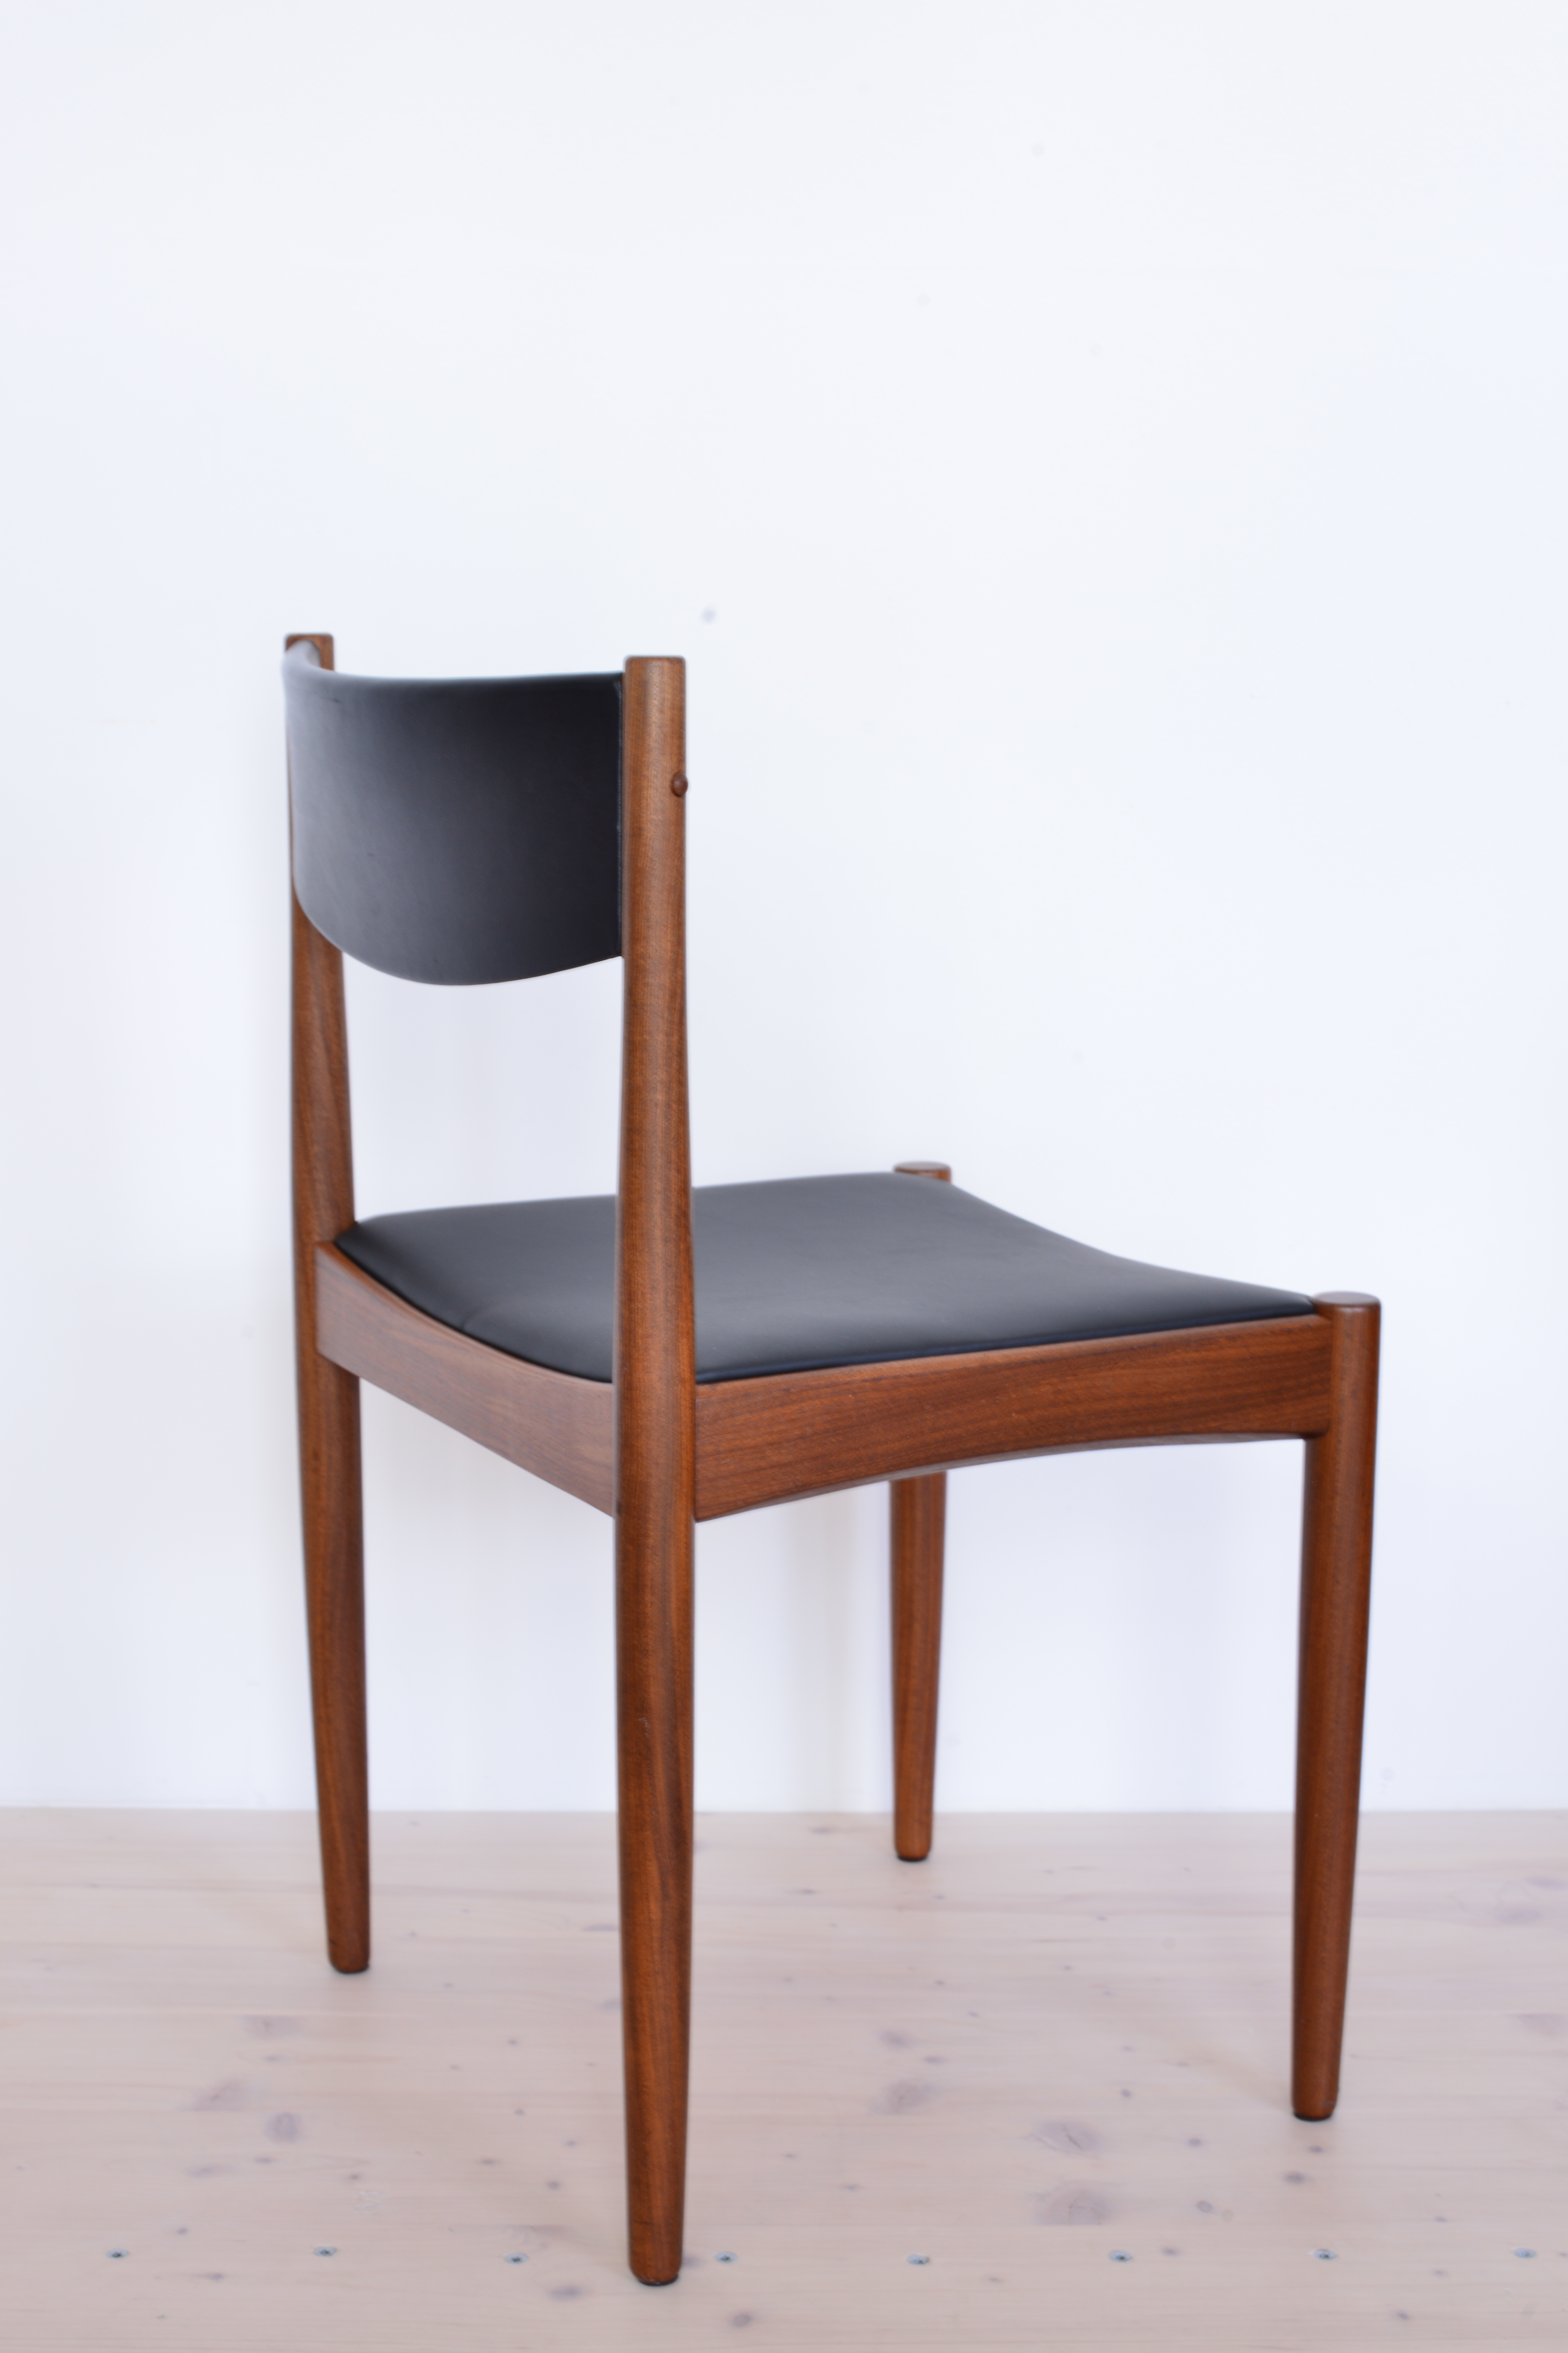 Skai Office Chair Afromosia heyday möbel Zürich Zuerich vintage mid-century furniture